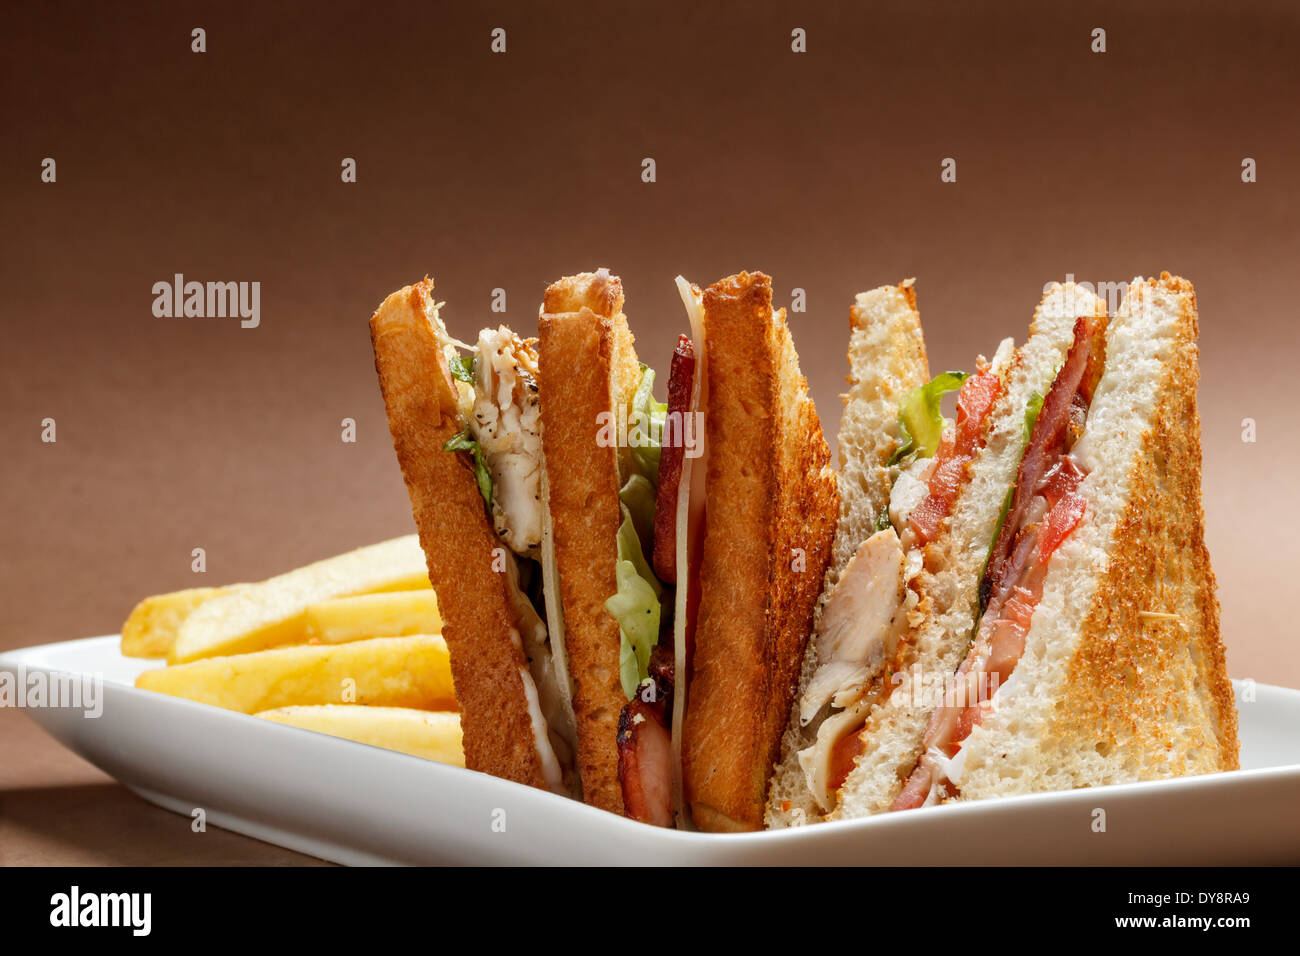 Club sandwich con pane tostato Foto Stock